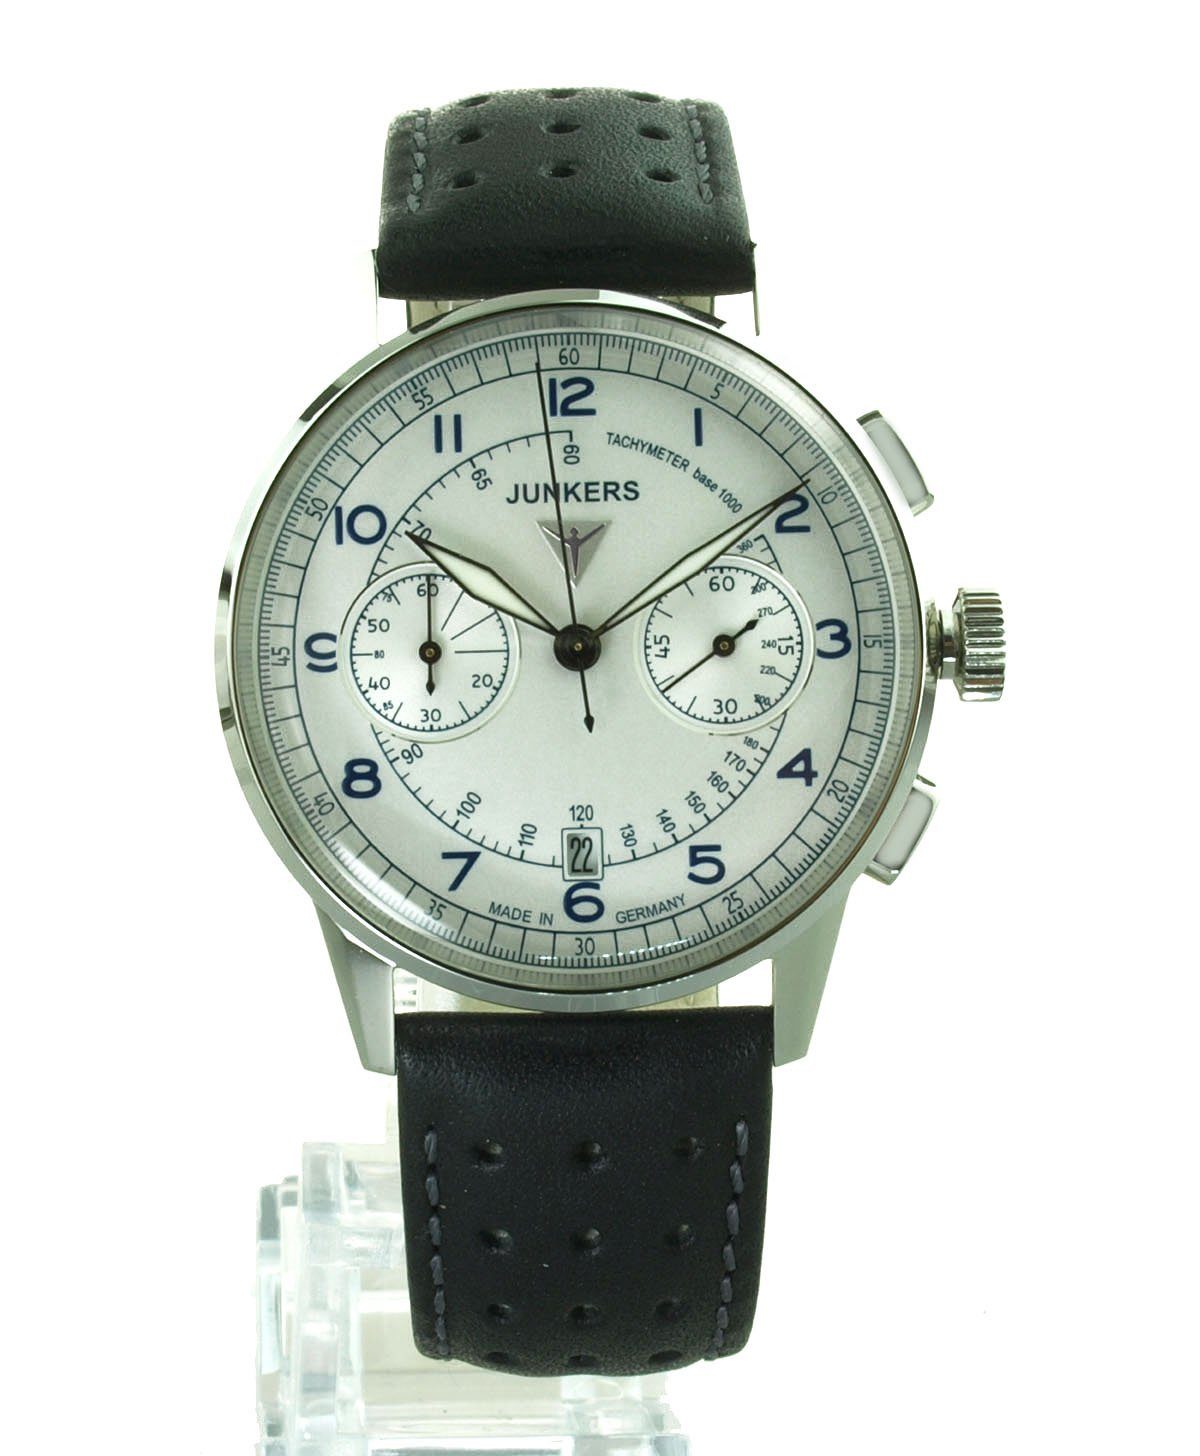 Junkers-Uhren G38 Chronograph Herren Uhr